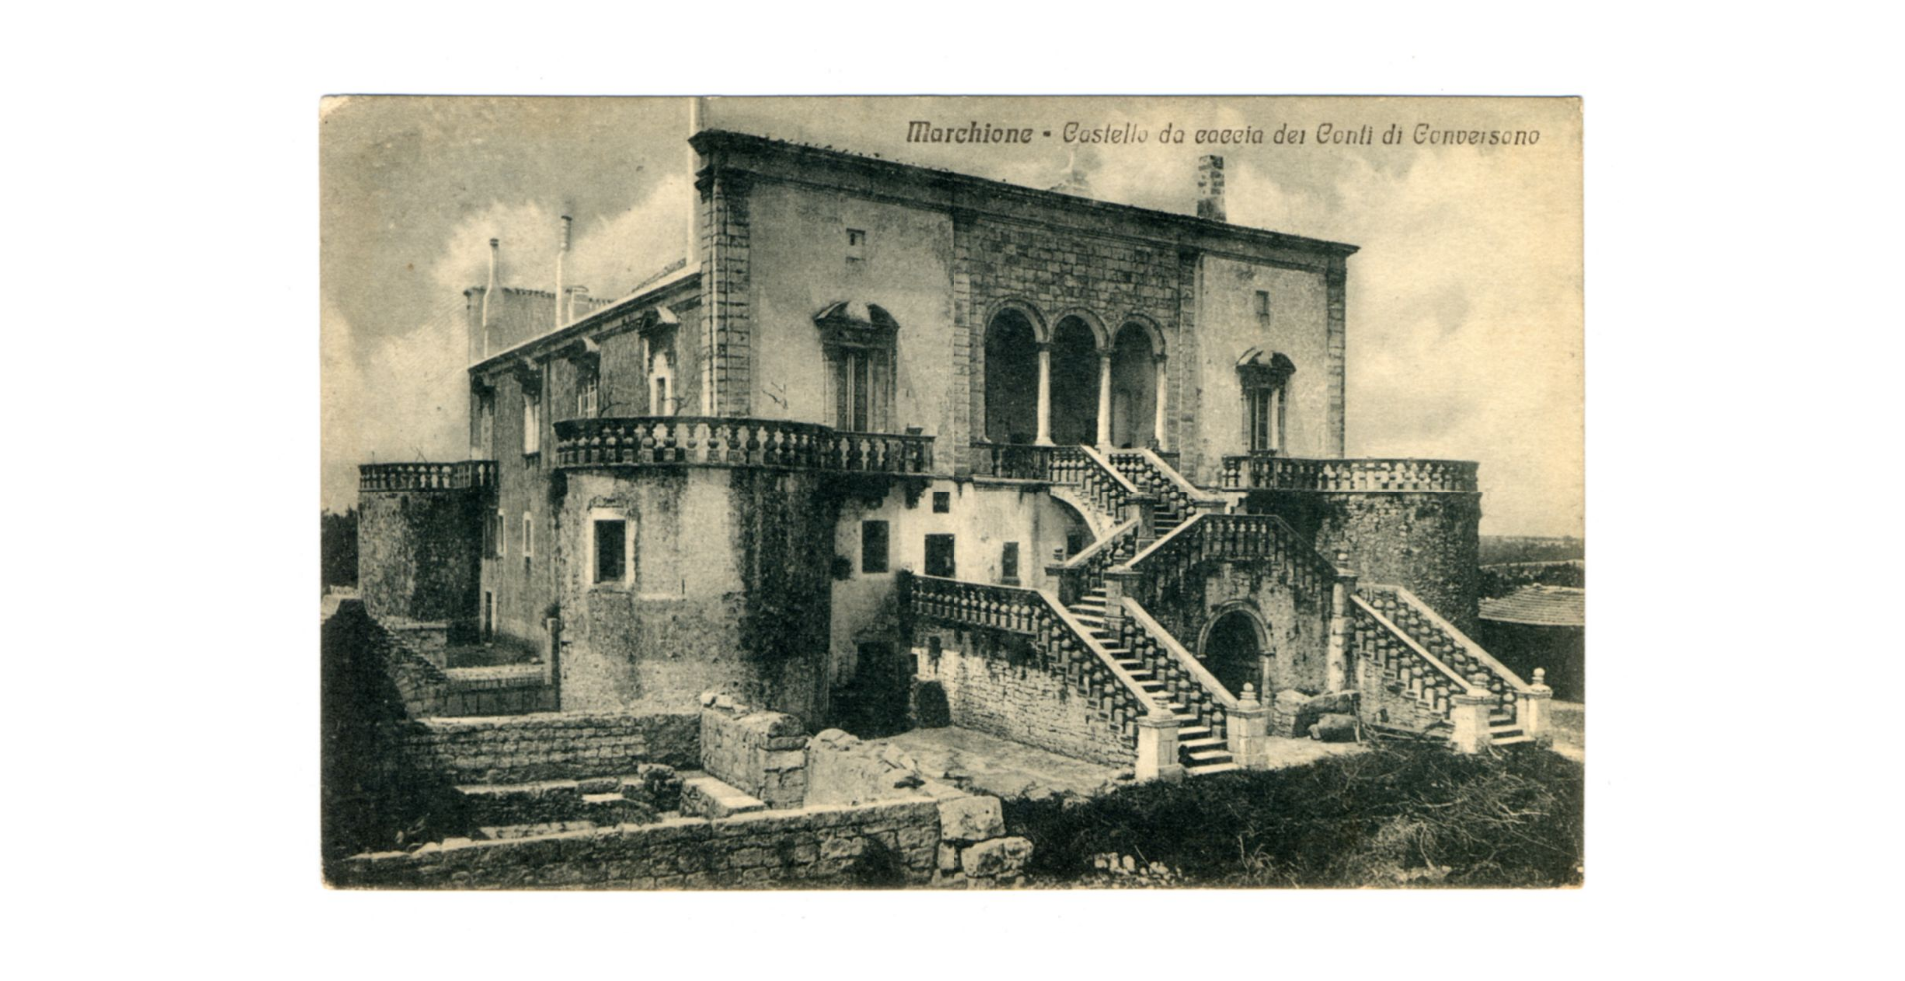 Fotografo non identificato, Conversano - Castello da caccia dei conti di Conversano, 1919, cartolina, FFC040277